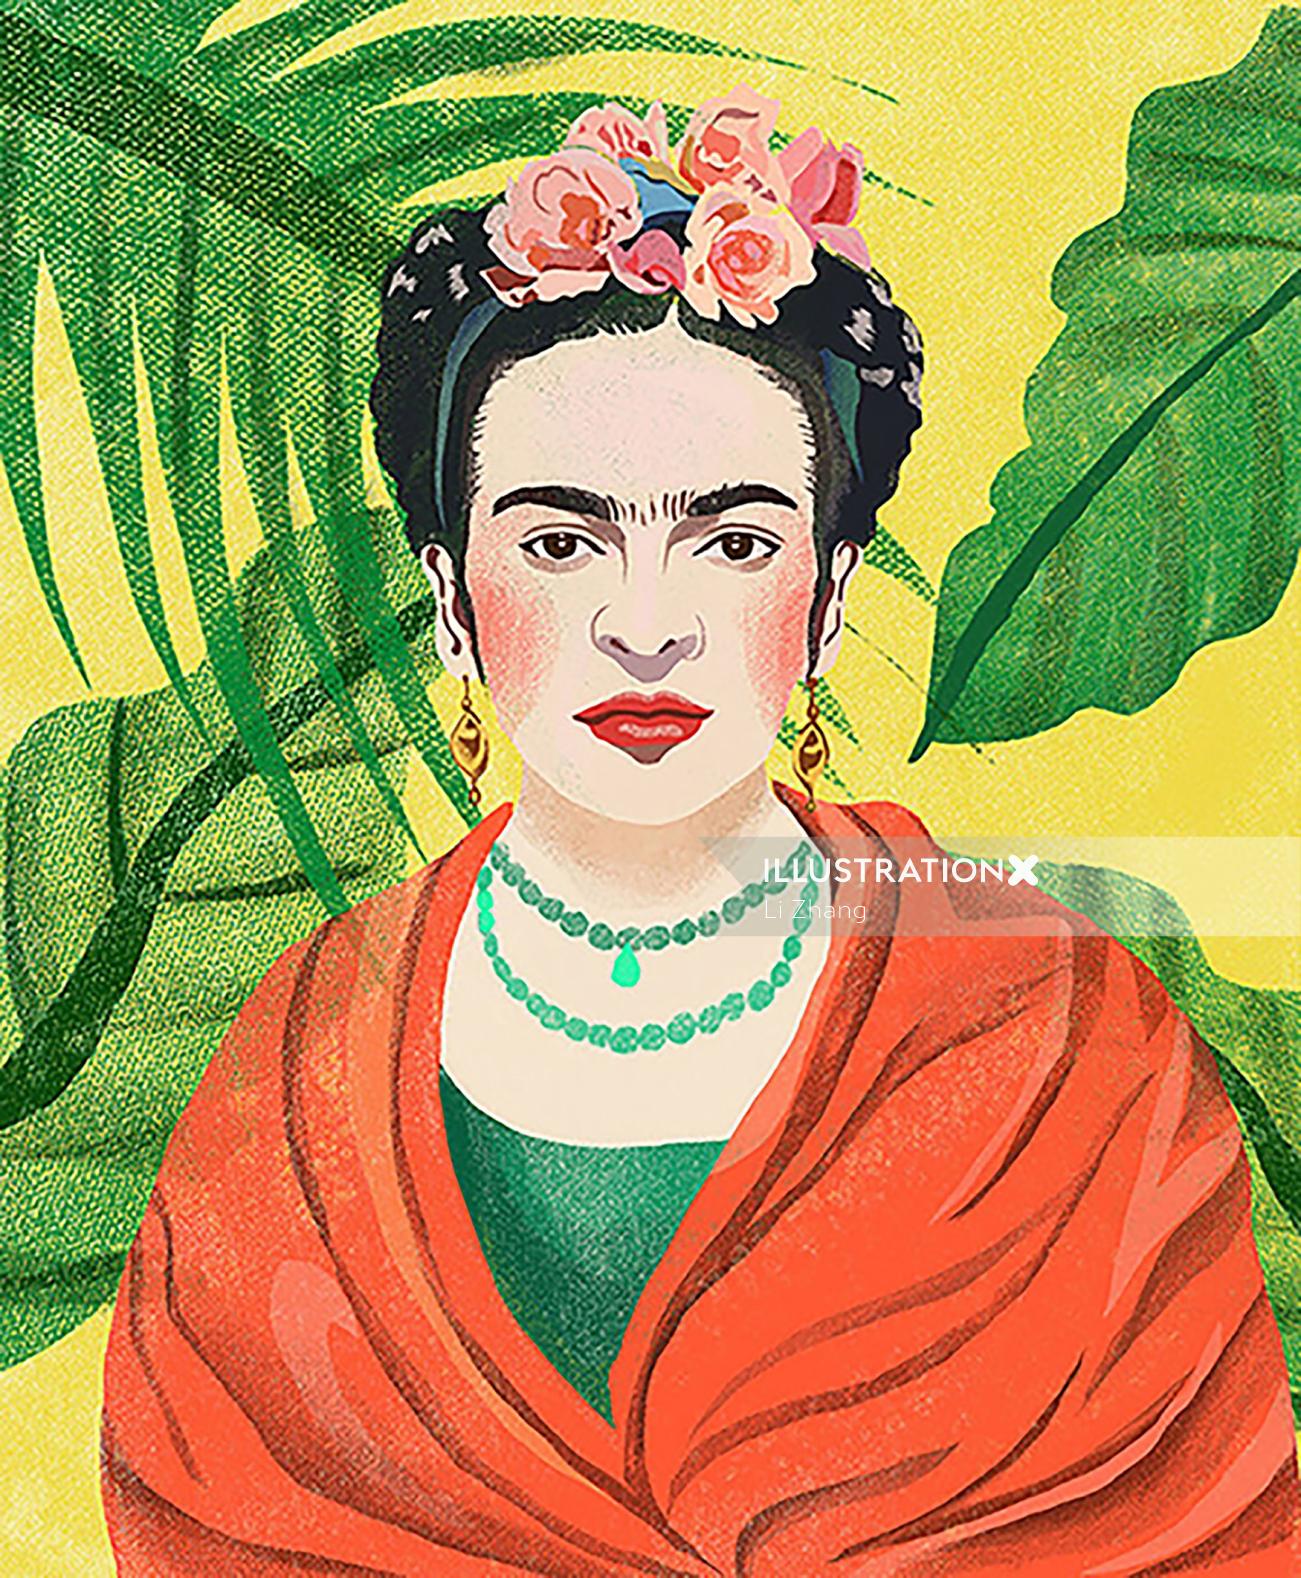 Digital portrait of Frida Kahlo